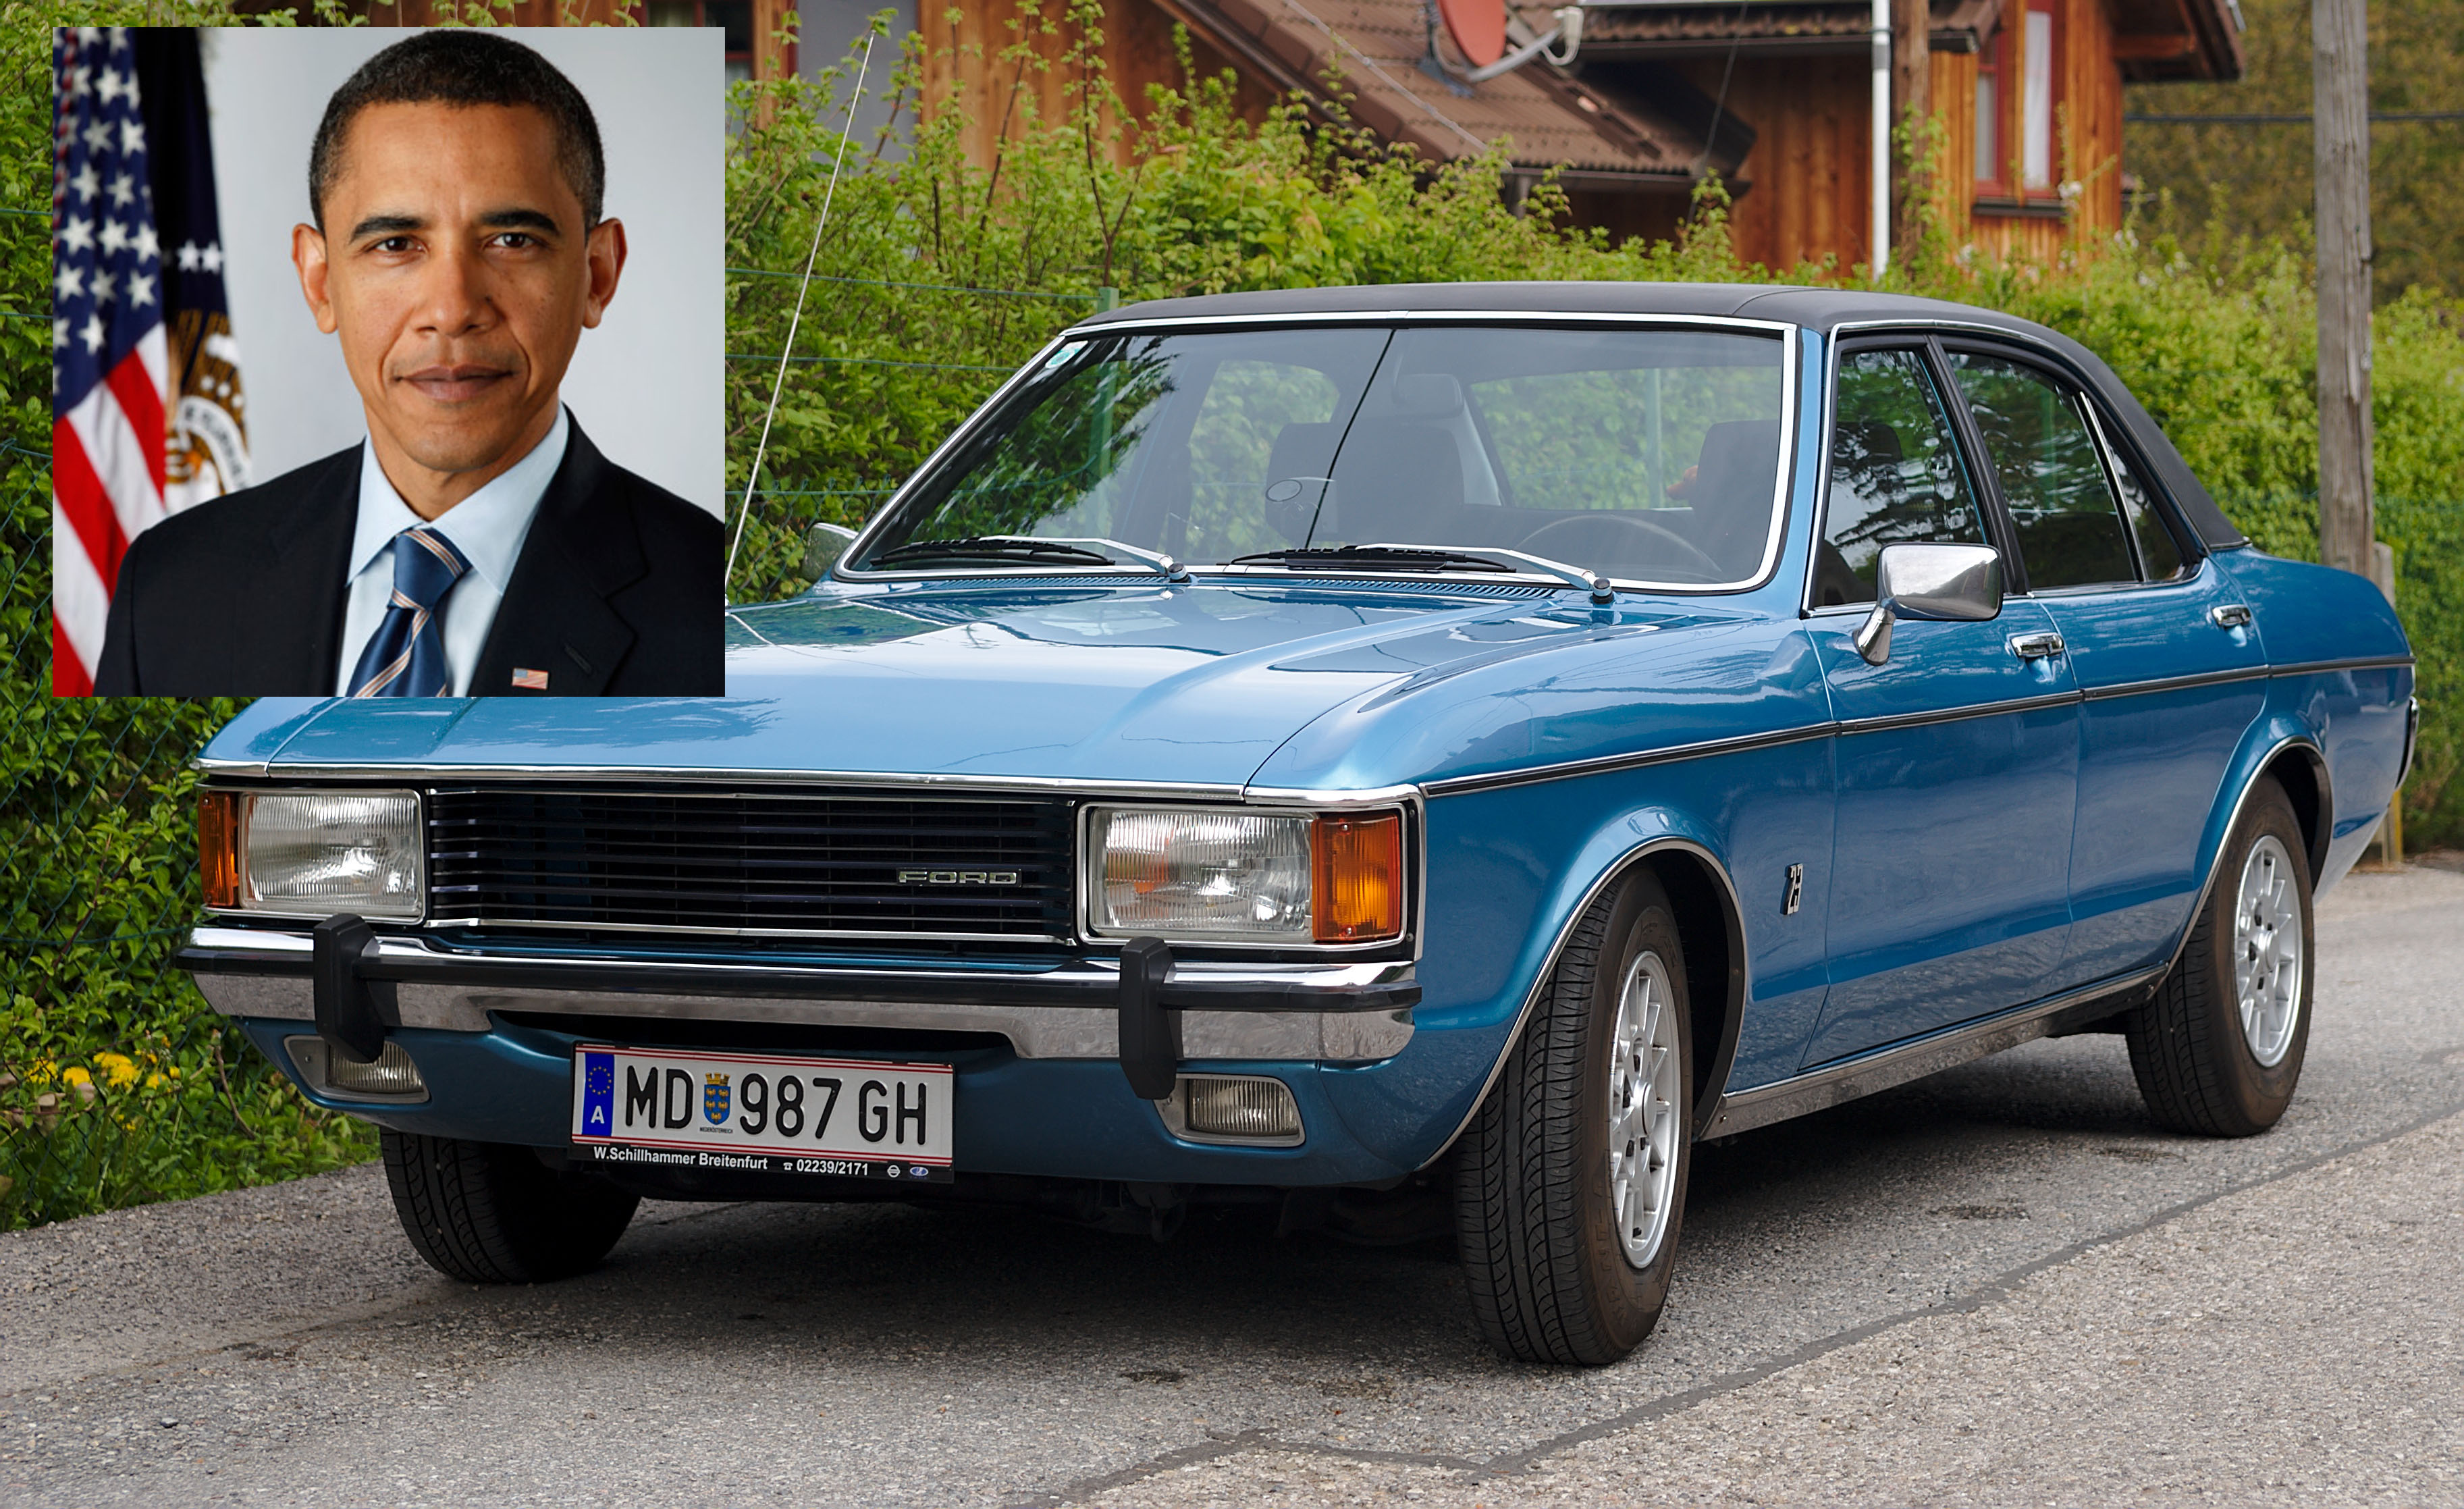 Barack Obama Car